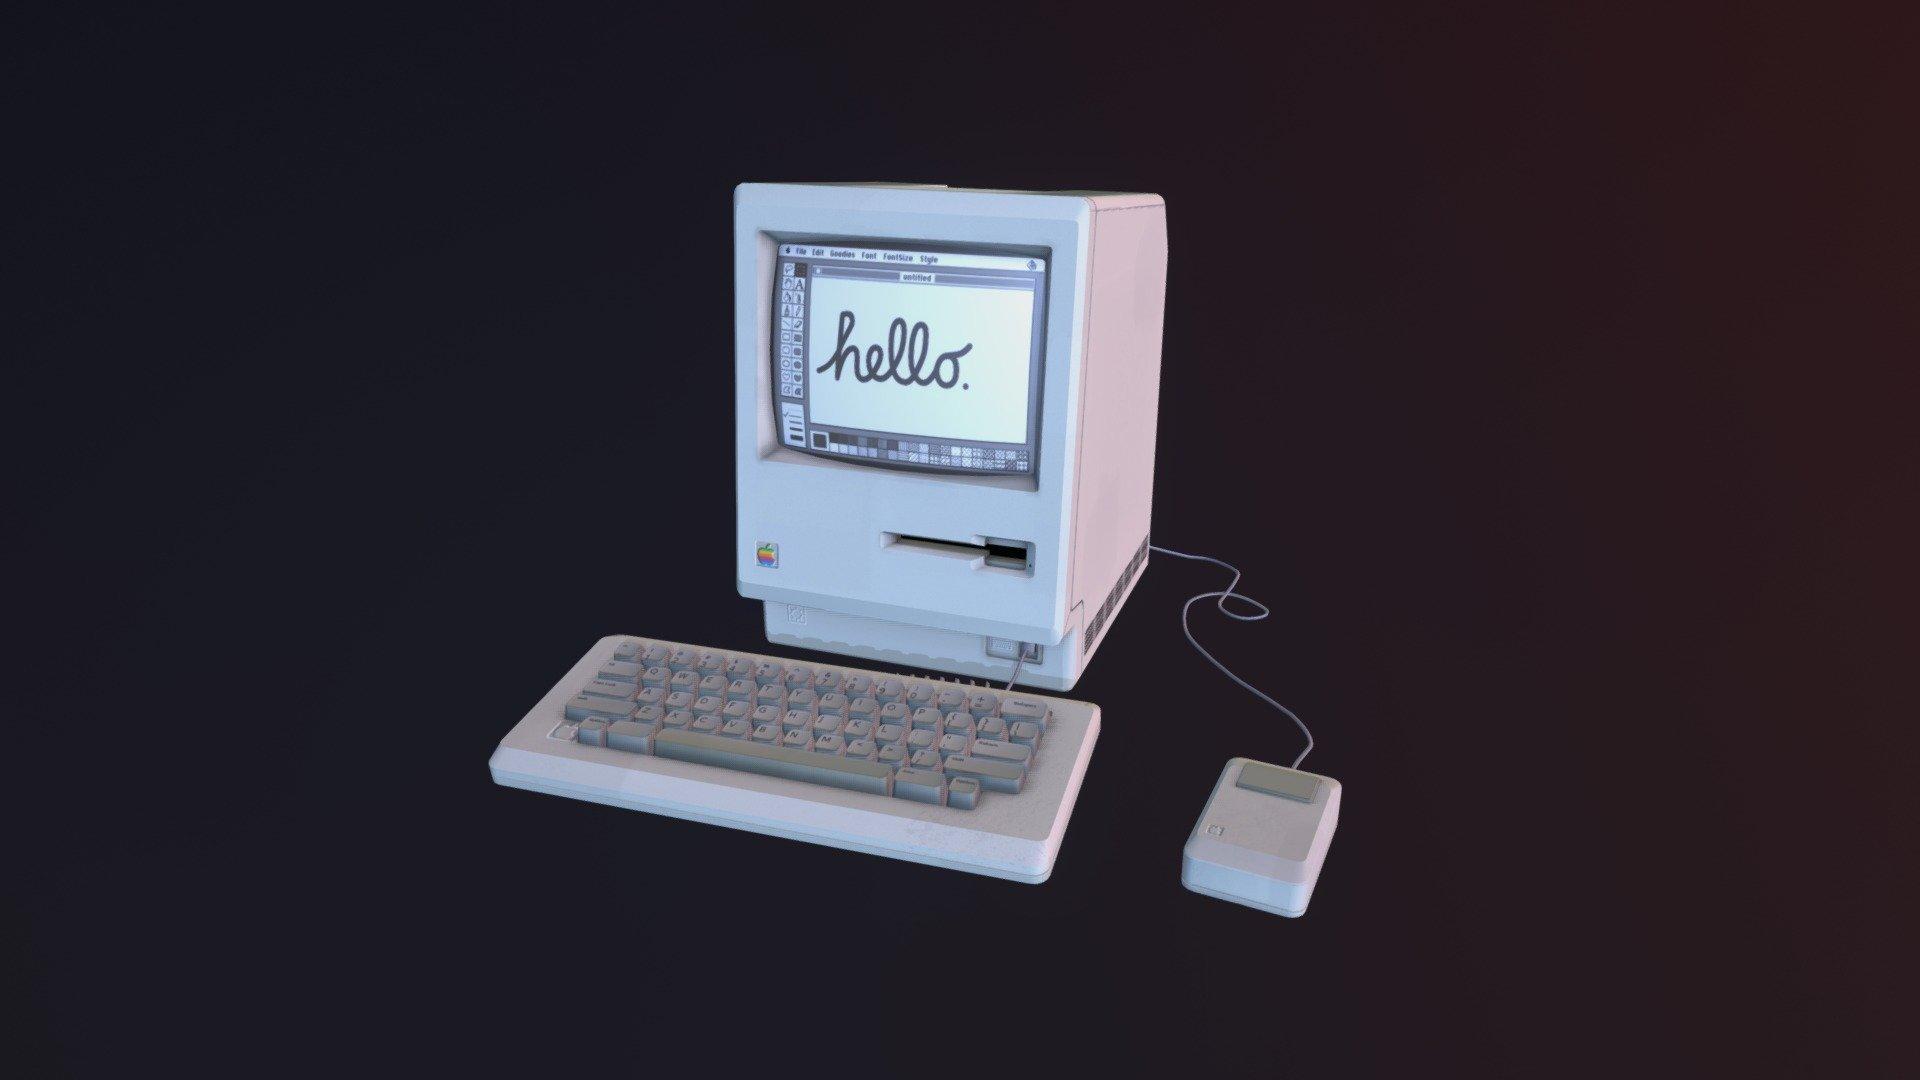 Macintosh 128k model by unconid [2f23e94]